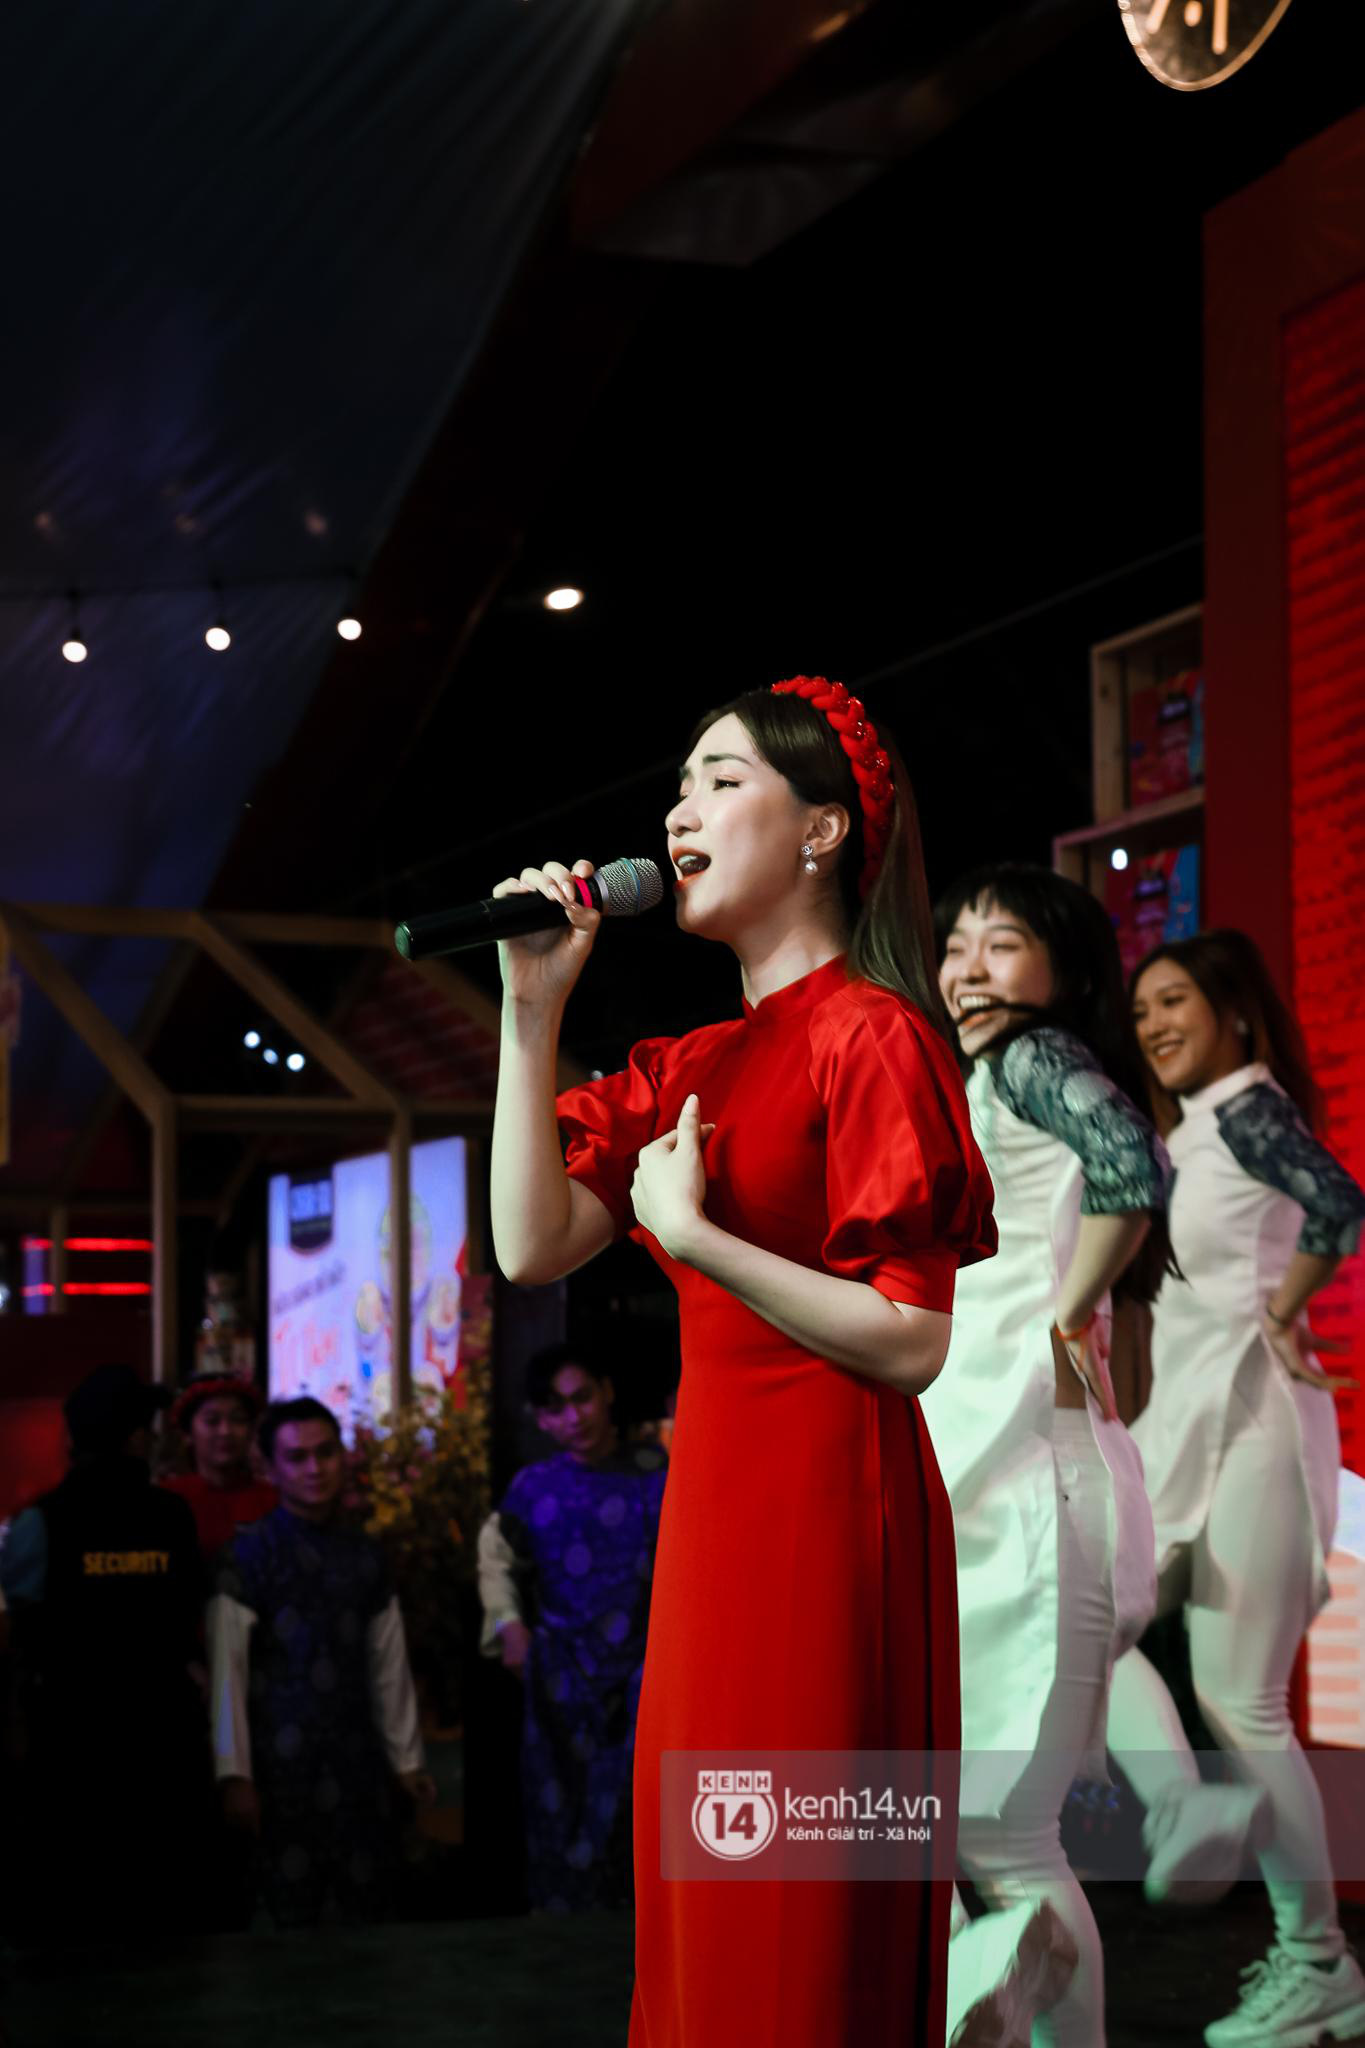 Giới trẻ phấn khích chờ đợi Hòa Minzy quẩy hết mình ngày kết thúc Lễ hội Tết Việt - Ảnh 2.